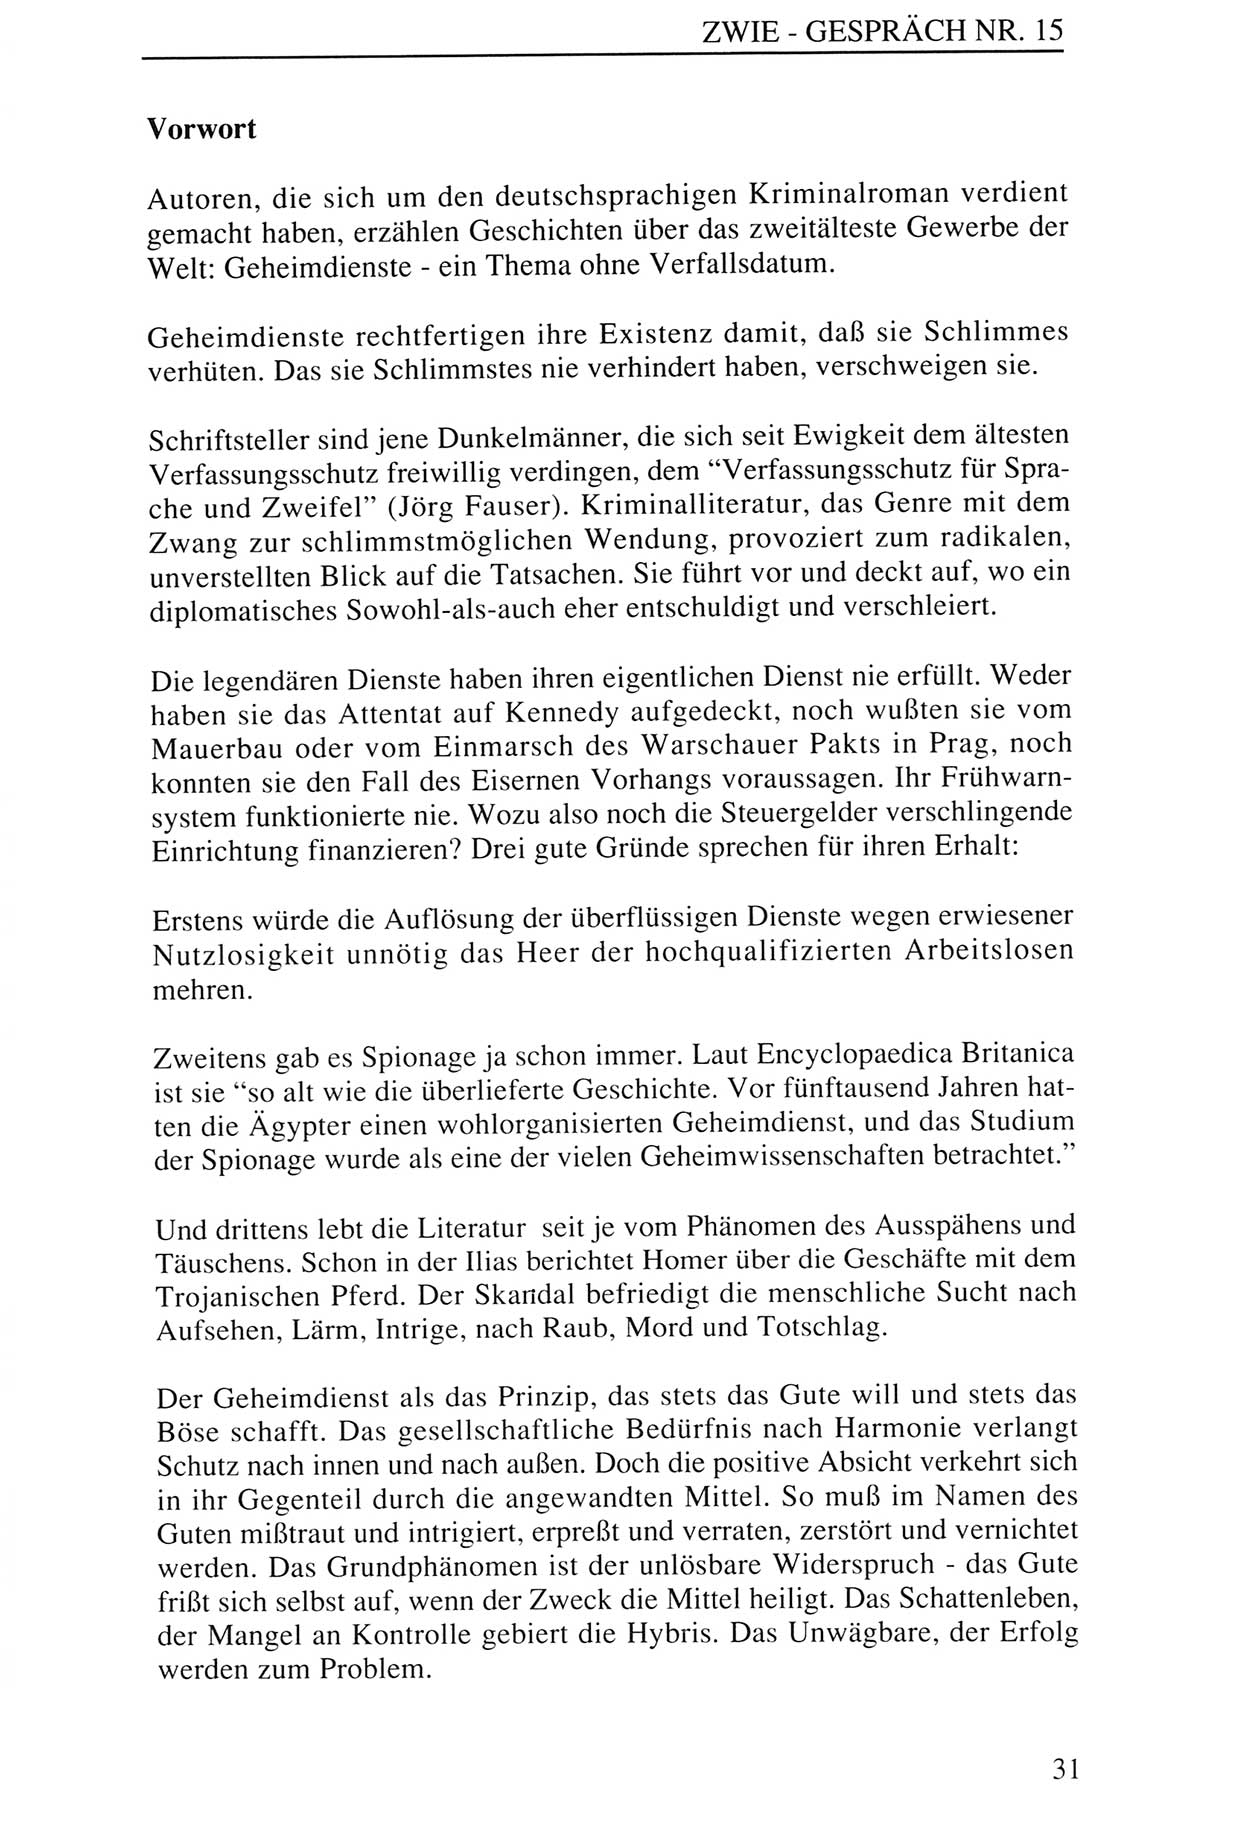 Zwie-Gespräch, Beiträge zur Aufarbeitung der Staatssicherheits-Vergangenheit [Deutsche Demokratische Republik (DDR)], Ausgabe Nr. 15, Berlin 1993, Seite 31 (Zwie-Gespr. Ausg. 15 1993, S. 31)